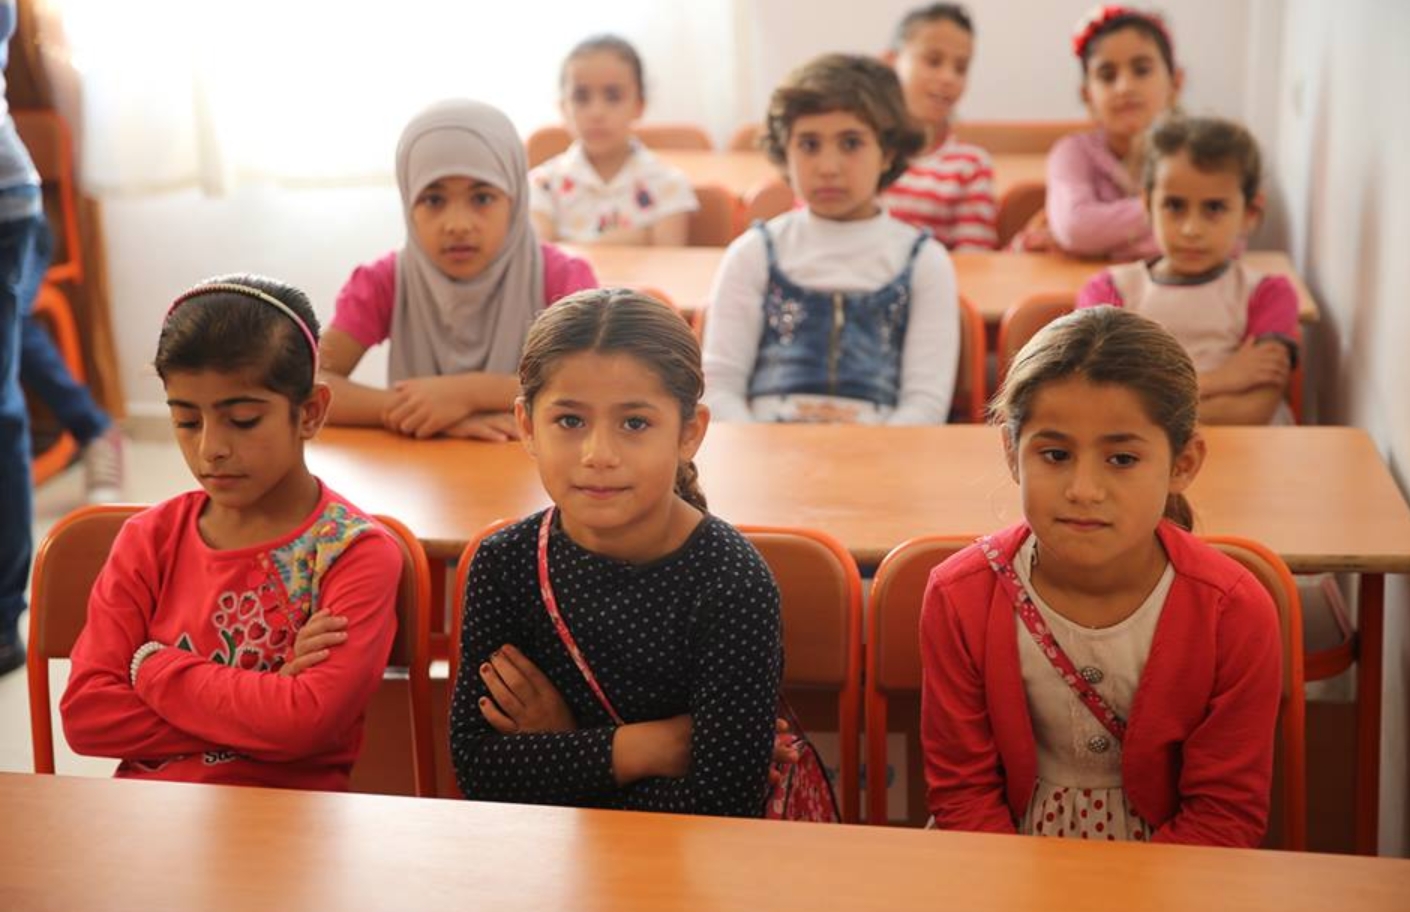 دورات مكثفة باللغة التركية للطلبة السوريين لمساعدتهم بالاندماج سريعاً في النظام التعليمي التركي